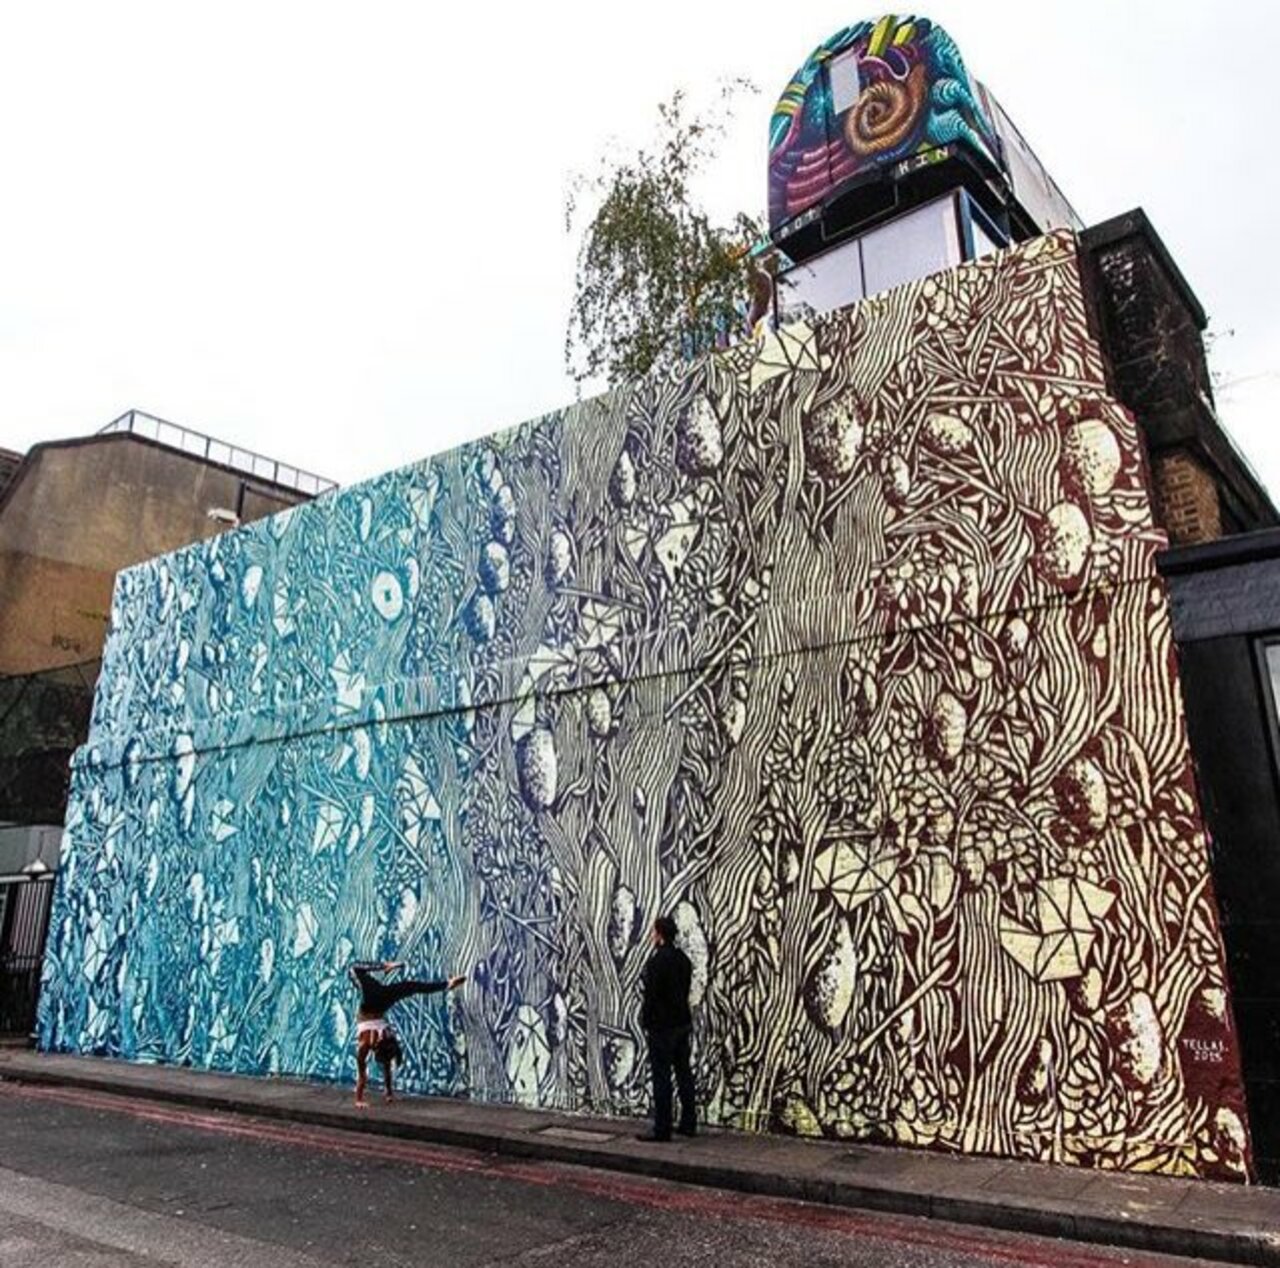 New Street Art by Tellas in Shoreditch London 

#art #graffiti #mural #streetart https://t.co/OUJG2EKaNB